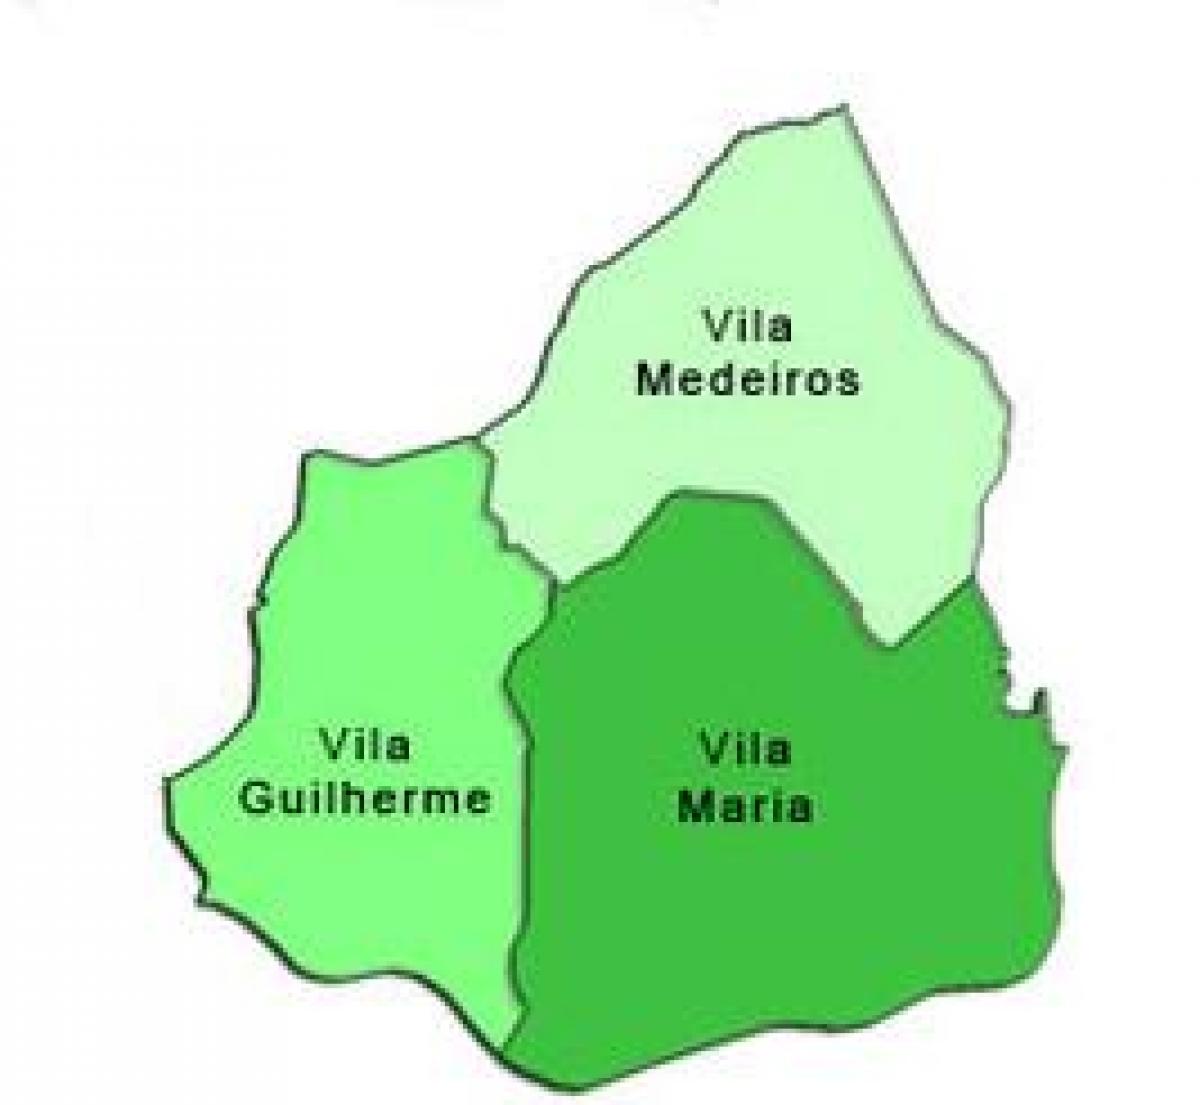 Karte von Vila Maria sub-Präfektur